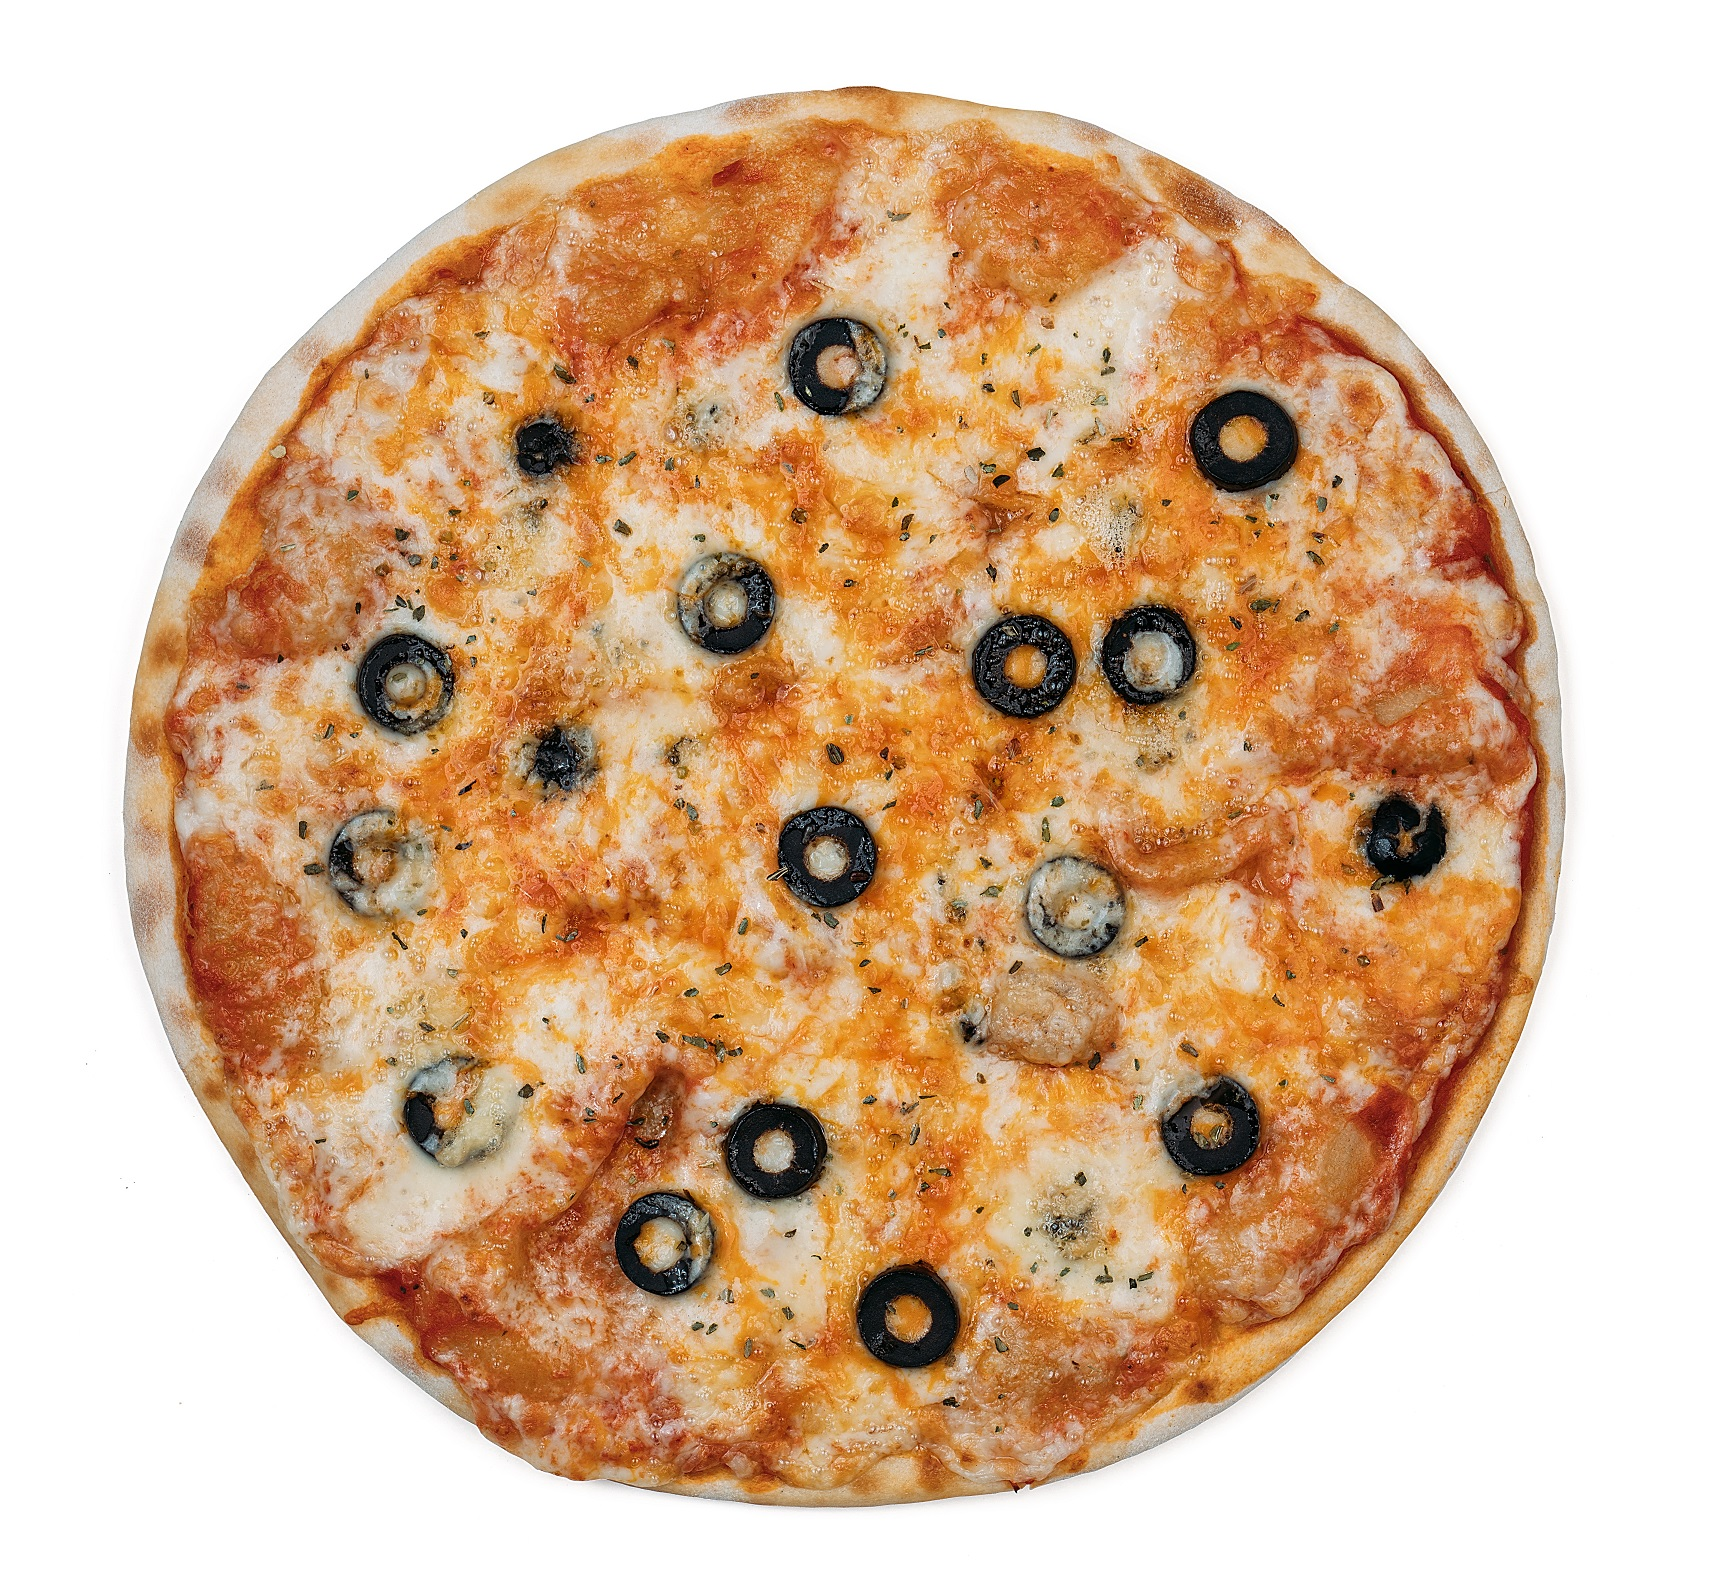 Стандартная пицца. Пицца 4 сыра. 35 См пицца 4 сыра. Римская пицца 4 сыра. Лайк пицца.